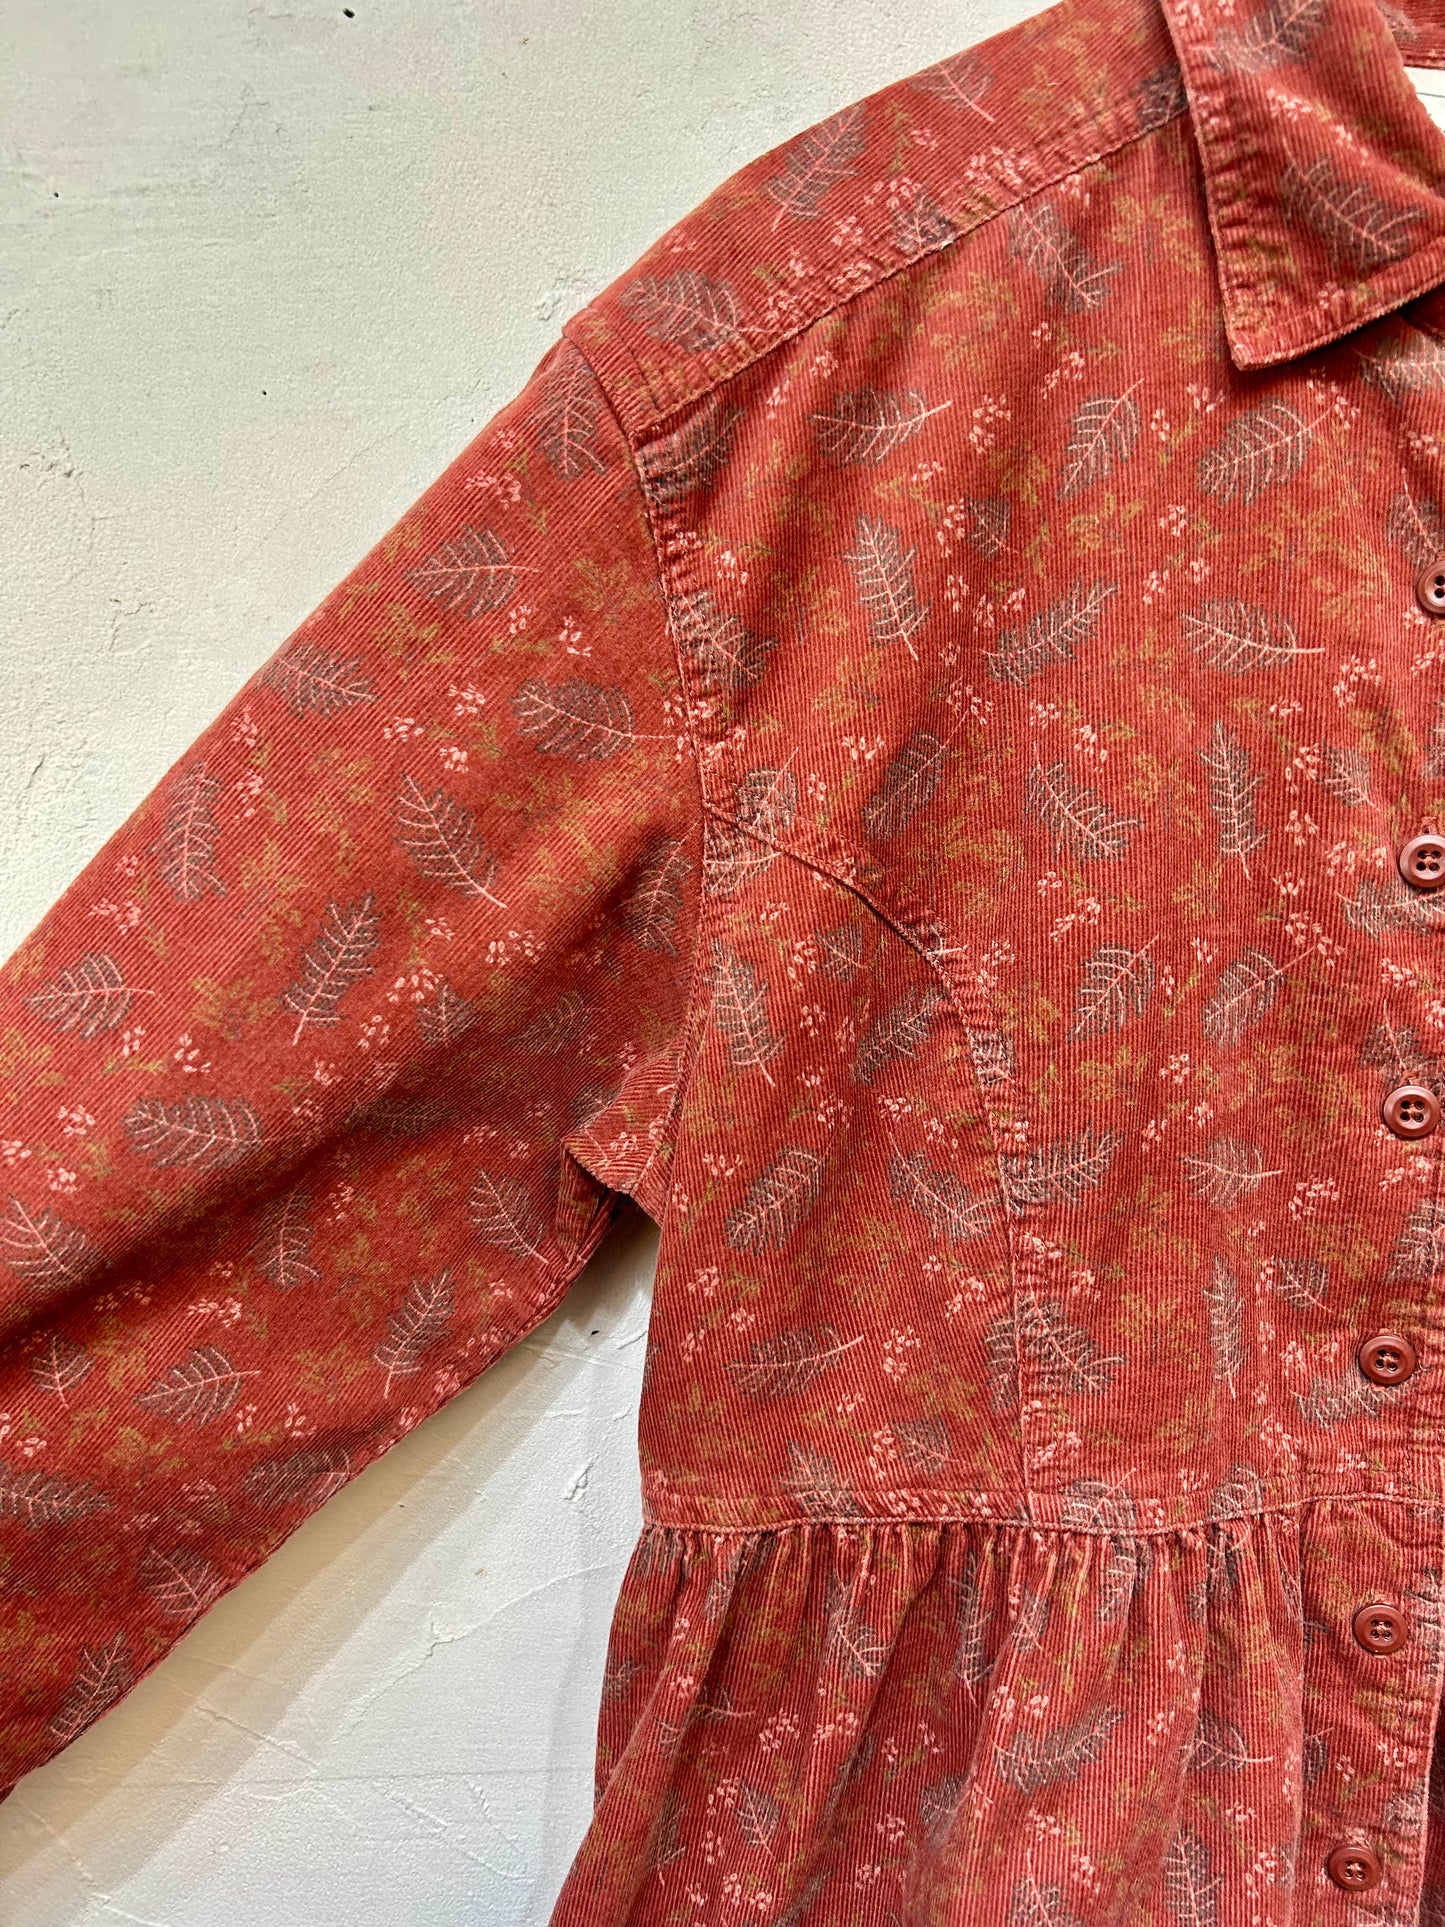 Vintage Corduroy Dress 〜L.L.Bean〜 [K25645]